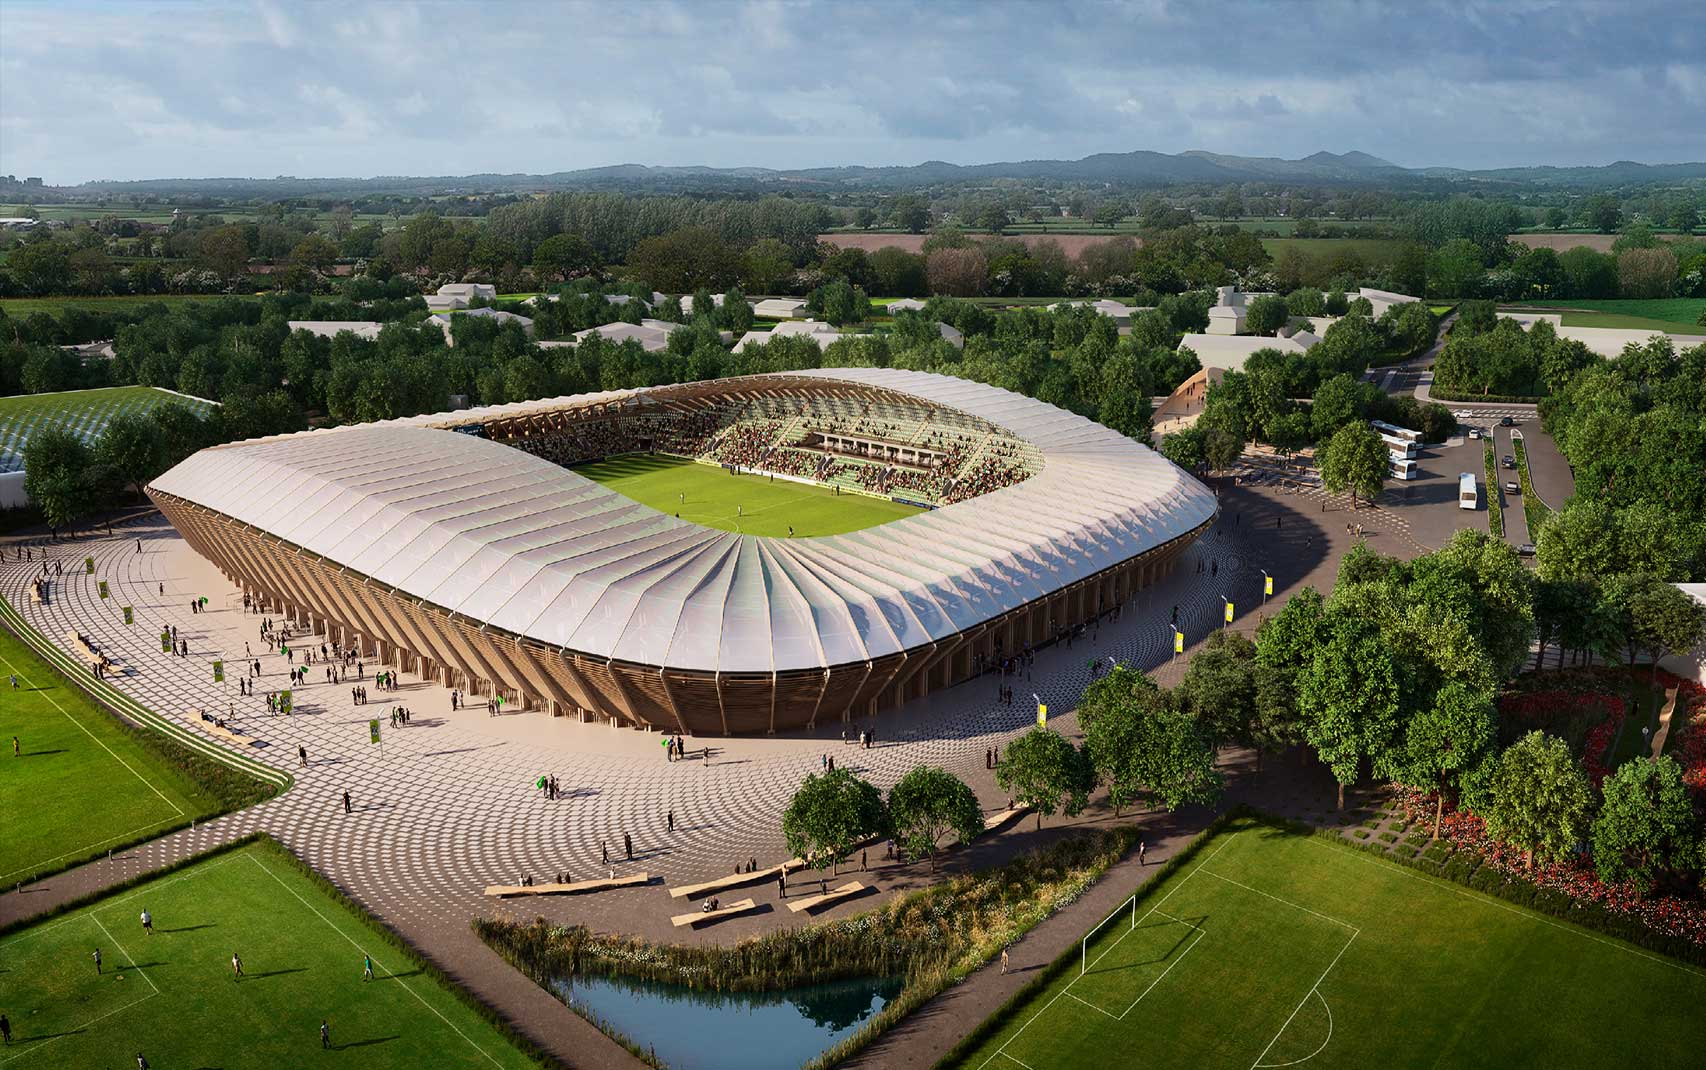 Владелец-хиппи, стадион из дерева и форма из кофейной гущи — как живет самый экологичный клуб мира?